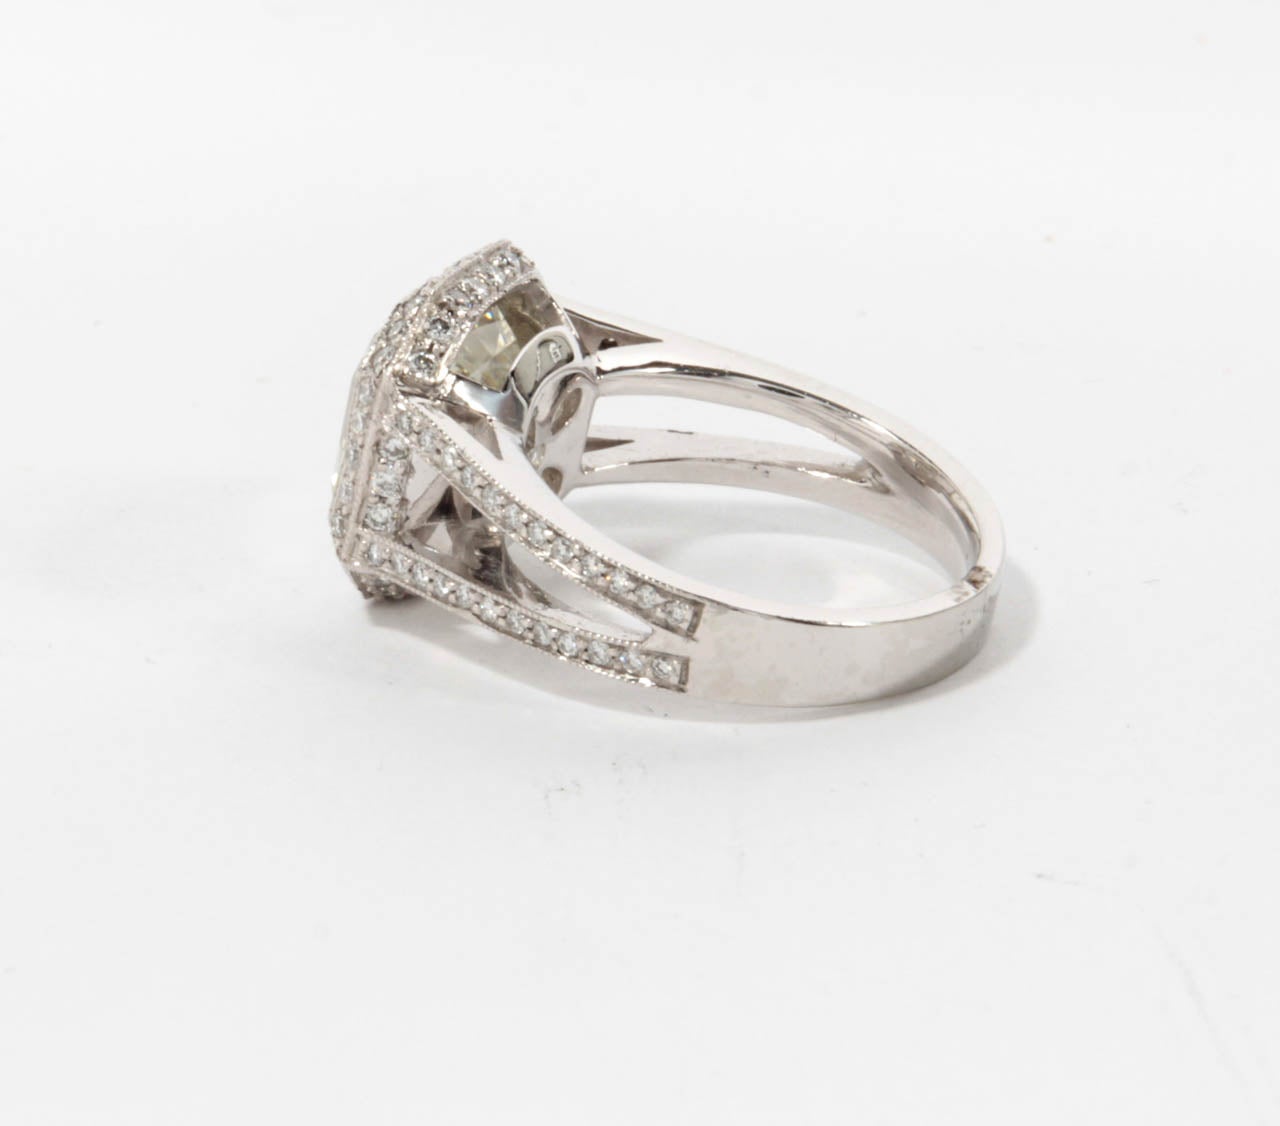 4 carat asscher cut engagement ring